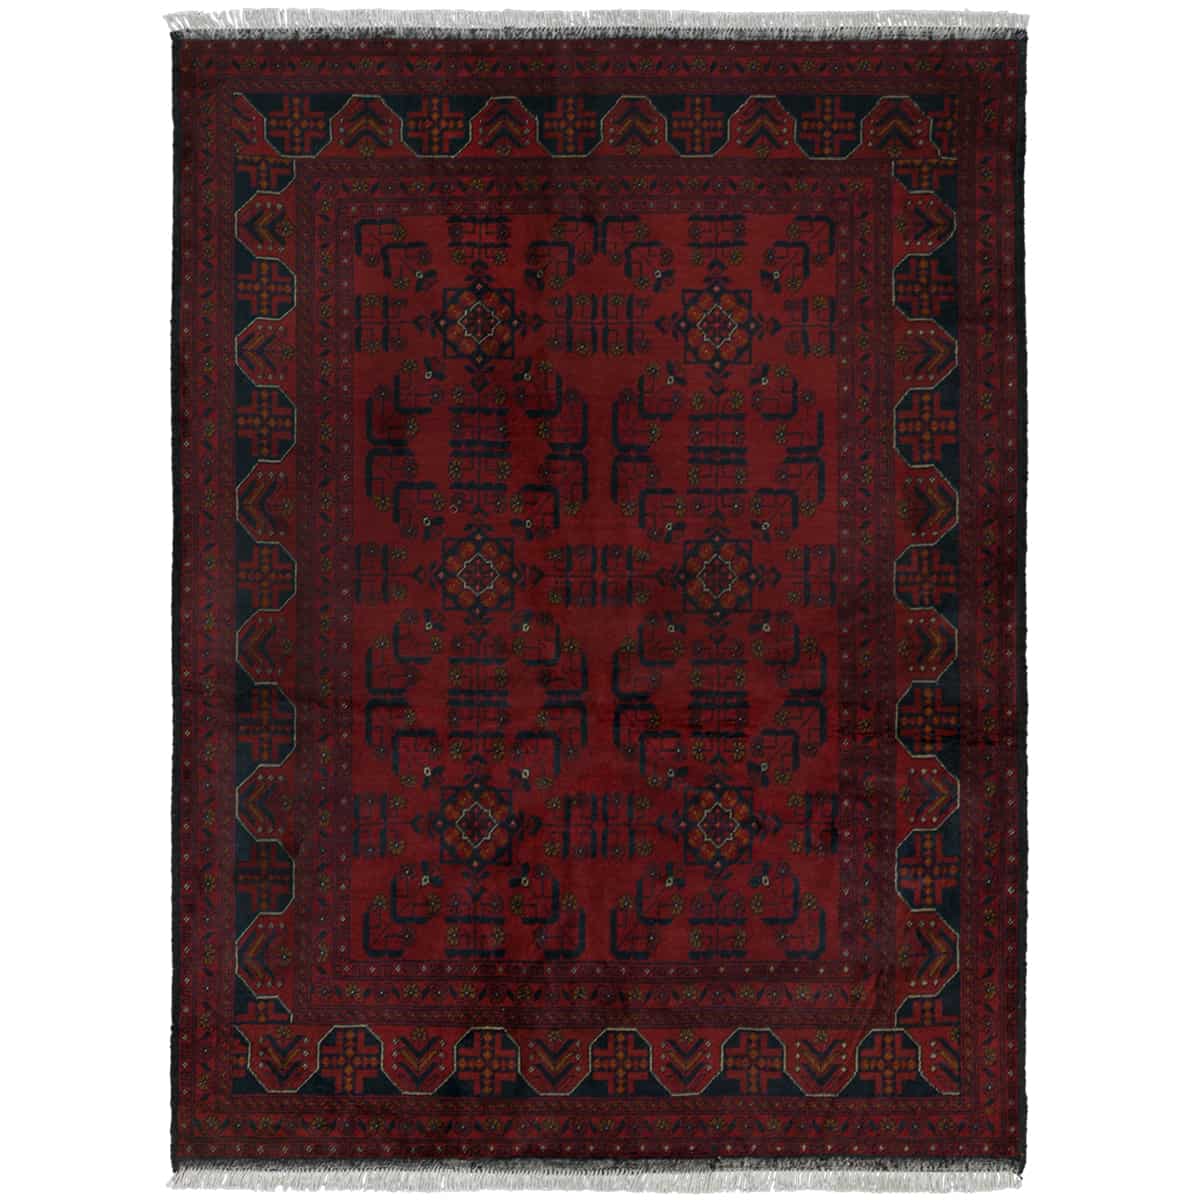  סופר חל ממדי בלג'יק 00 אדום 151x200 | השטיח האדום 